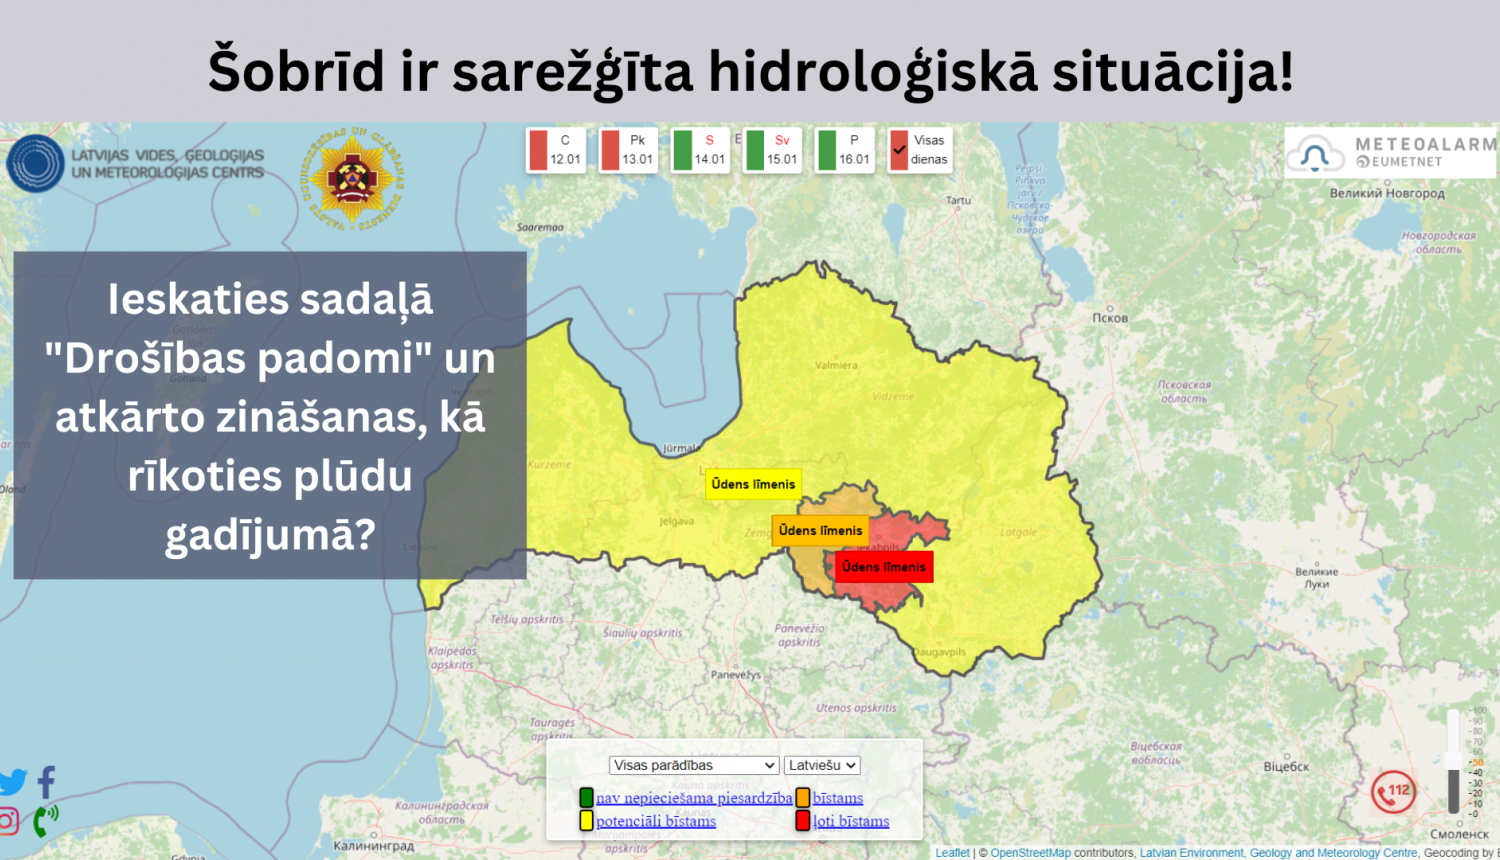 Vizuāls materiāls, kurā redzama Latvijas karte, kas iekrāsota šobrīd spēkā esošo brīdinājumu krāsās - dzeltenā, oranžā un sarkanā. Kreisajā pusē lasāms teksts: Ieskaties sadaļā "Drošības padomi" un atkārto zināšanas - Kā rīkoties plūdu gadījumā?